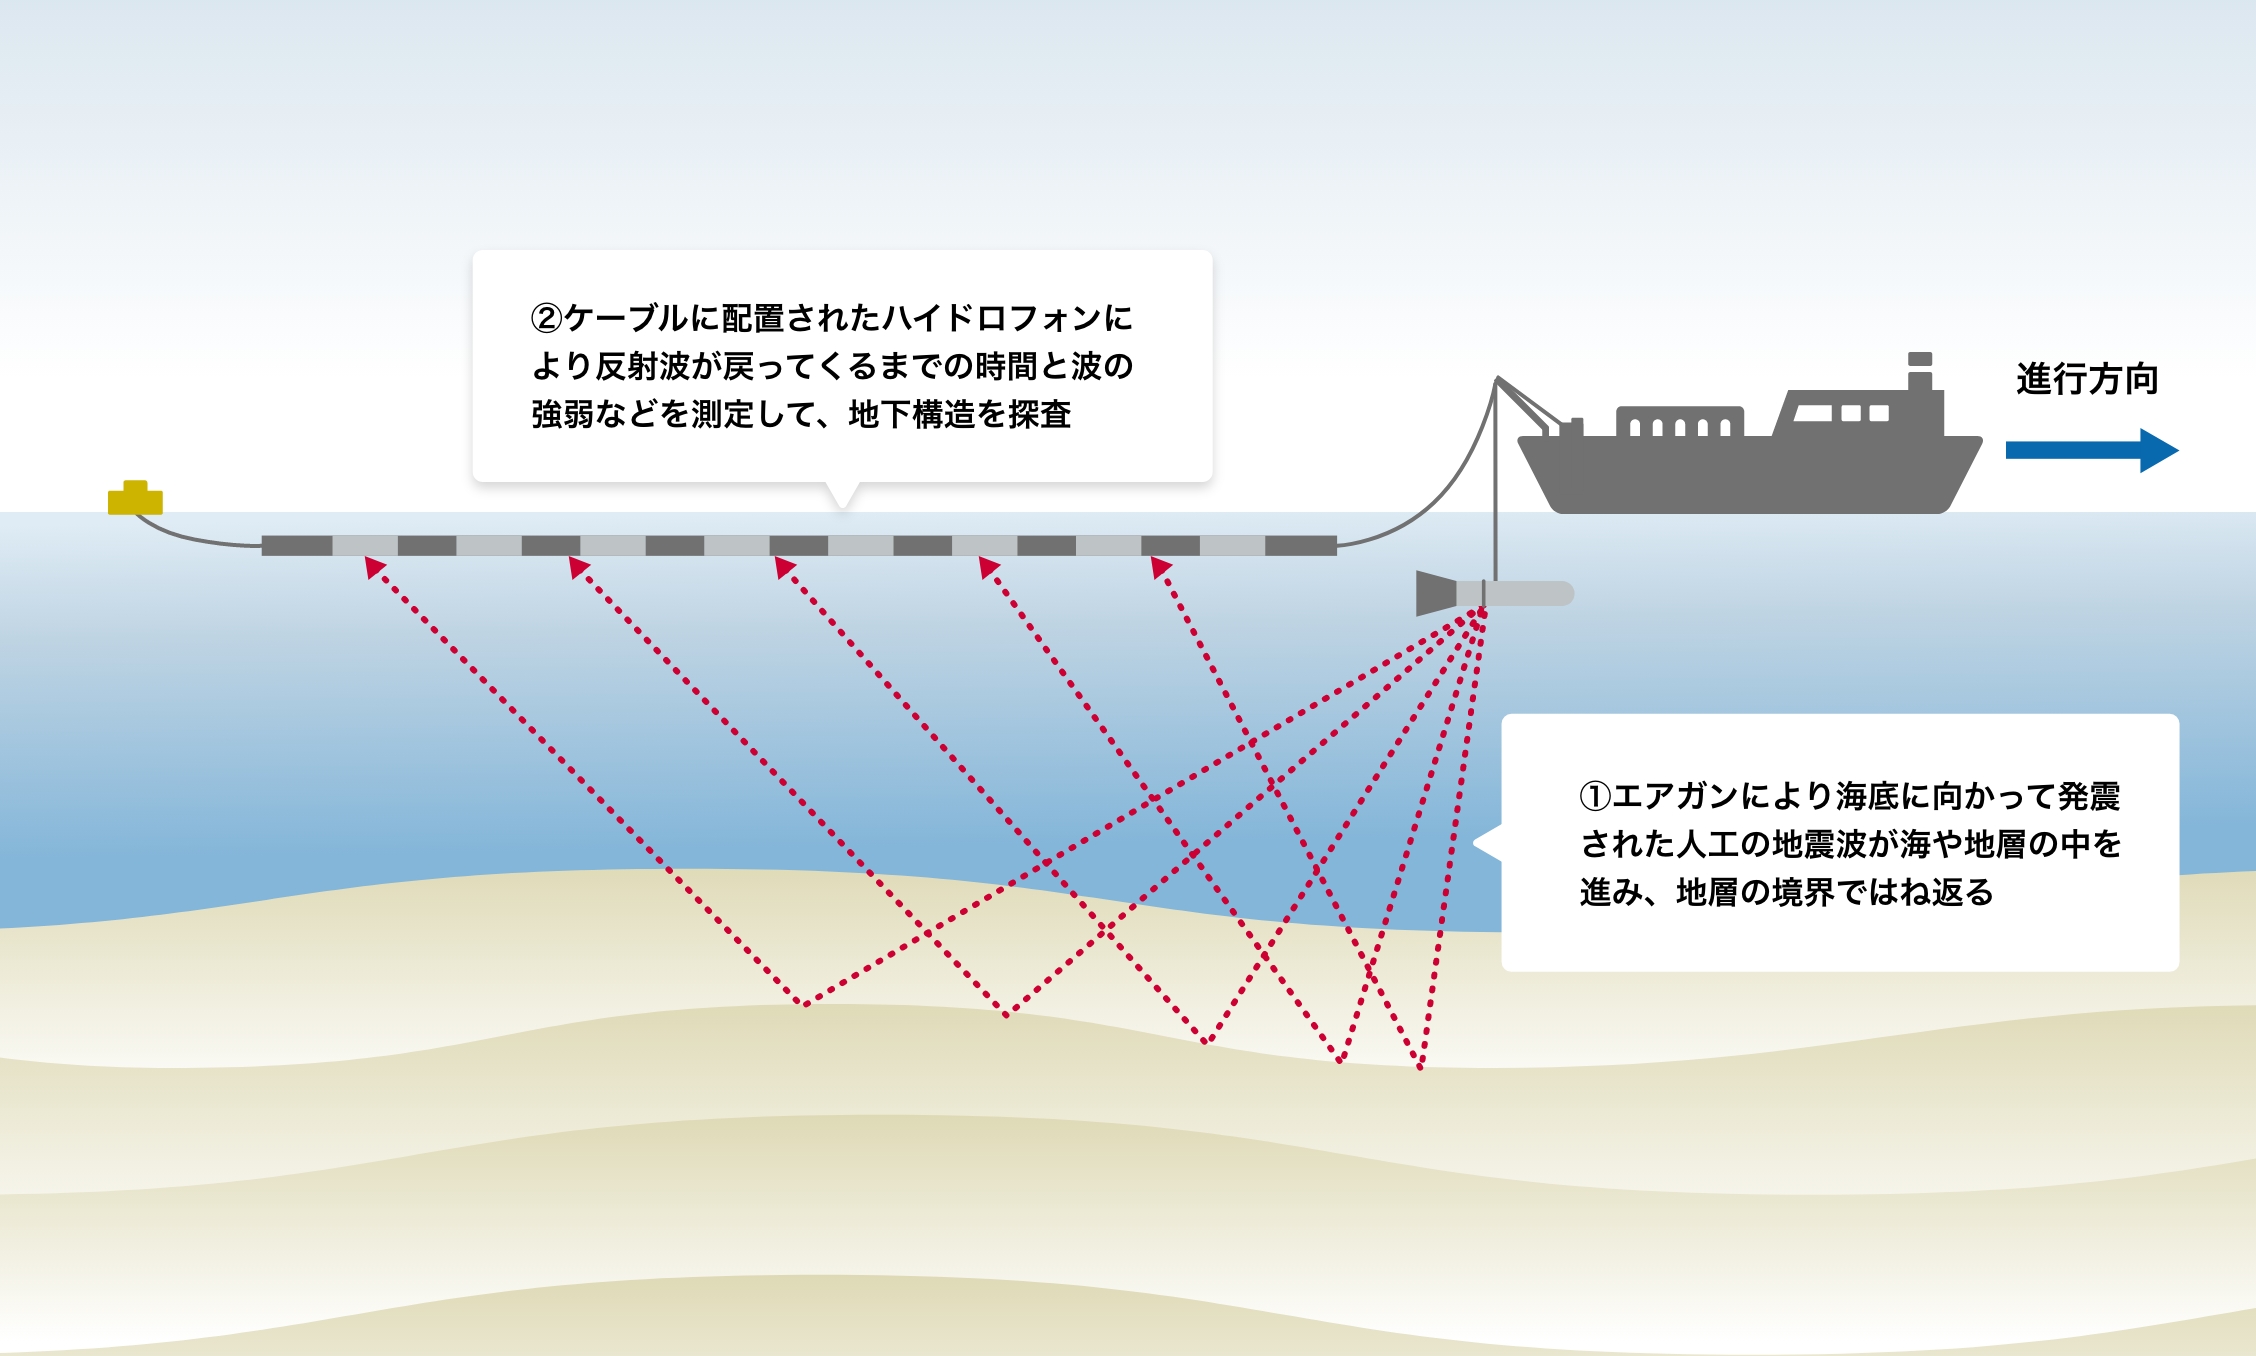 Image: Offshore seismic survey measurement